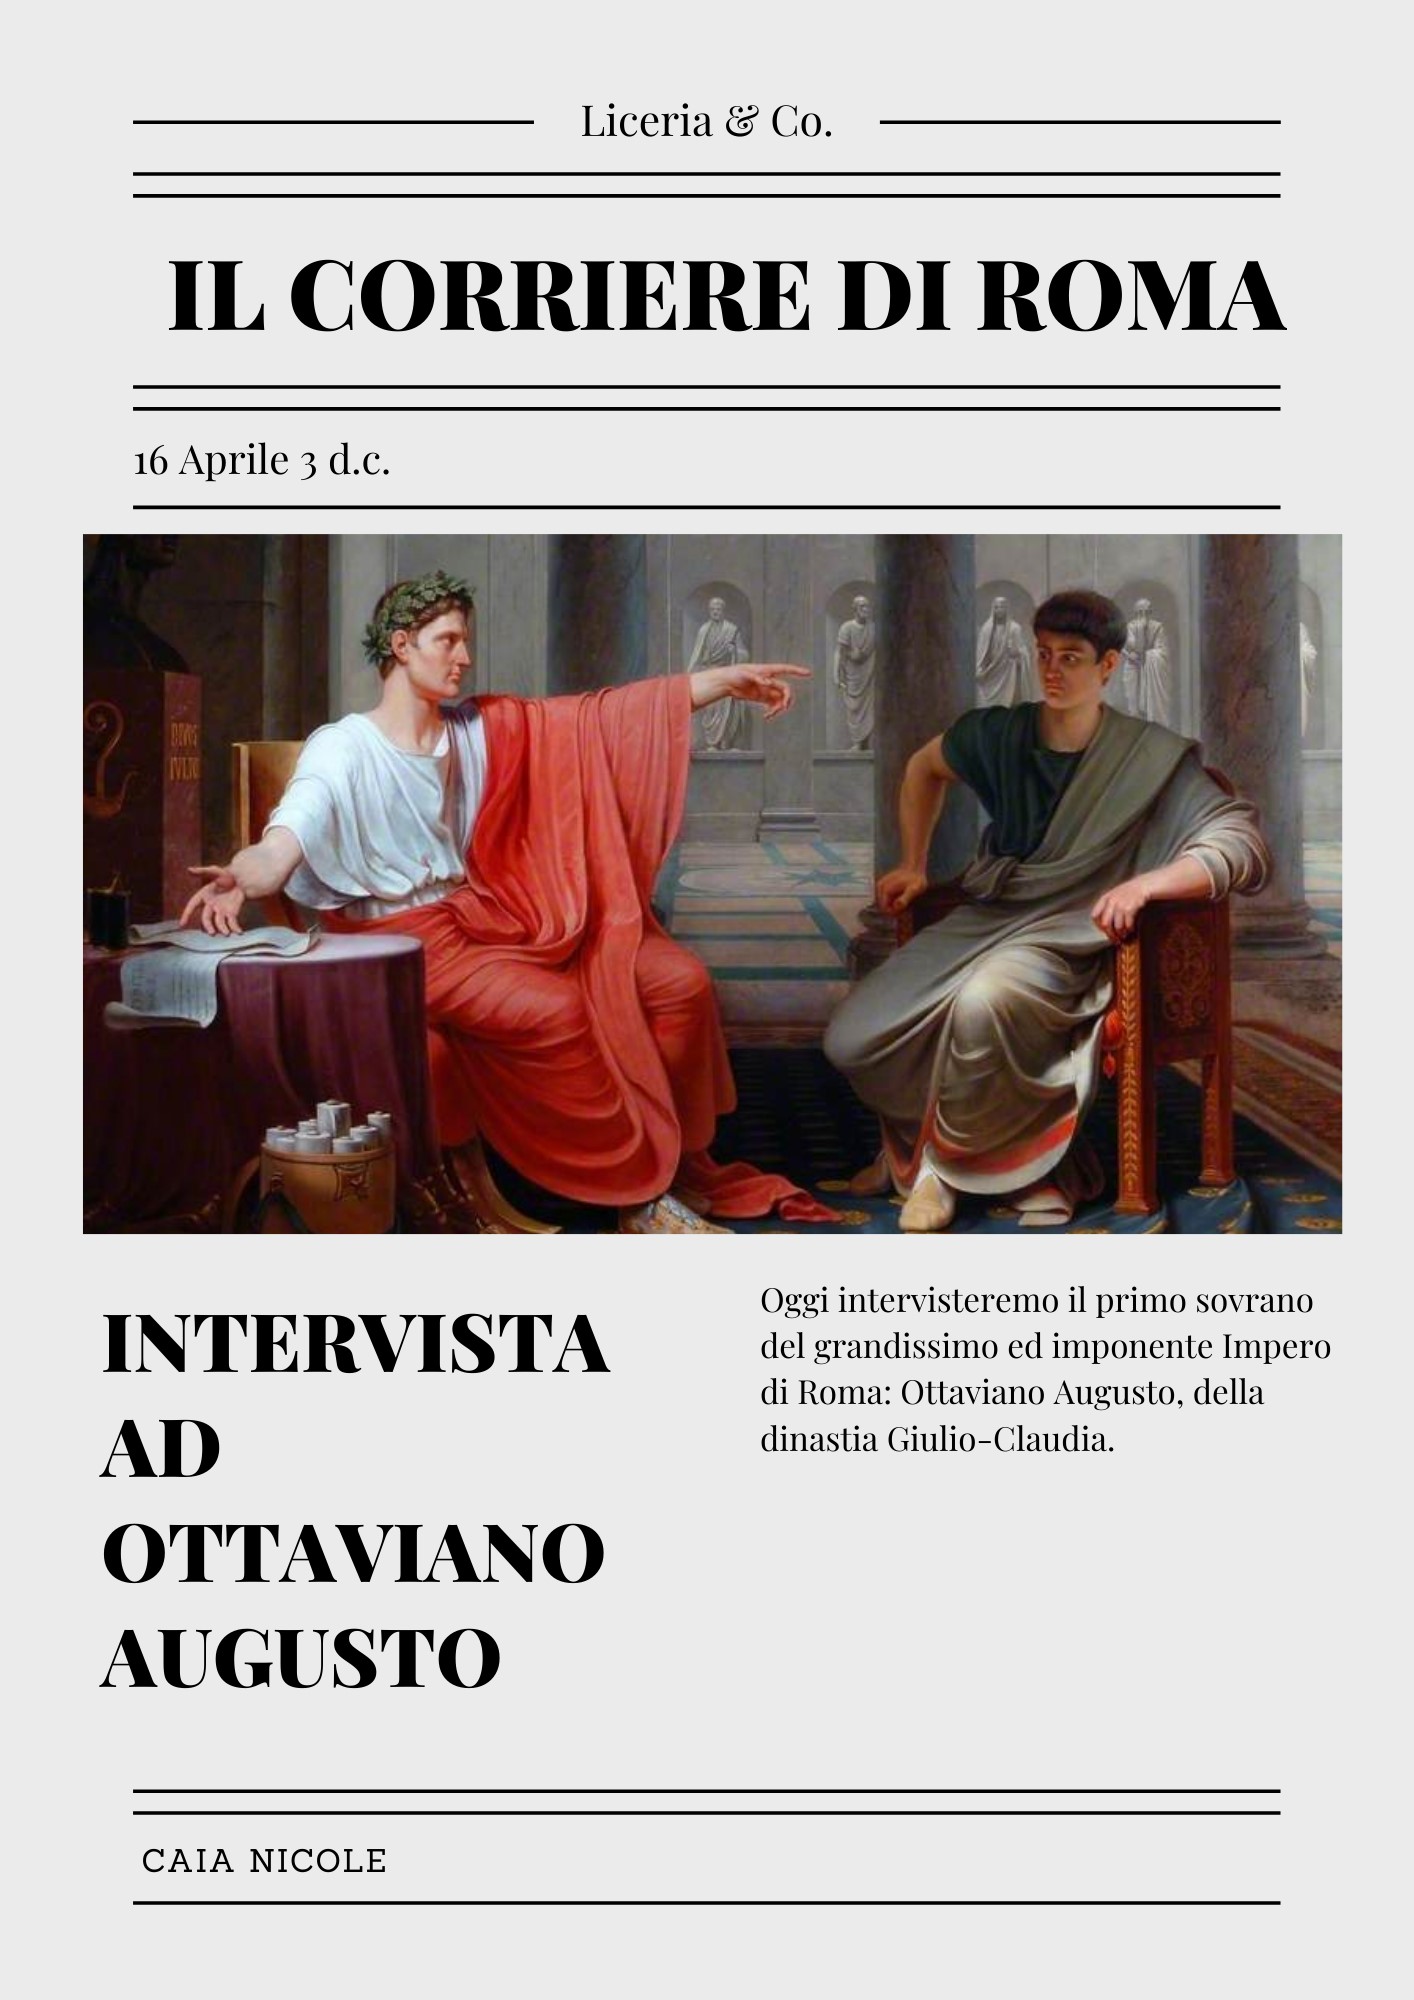 Breve storia d'Italia (Francesco Cesare Casula) - Carlo Delfino editore